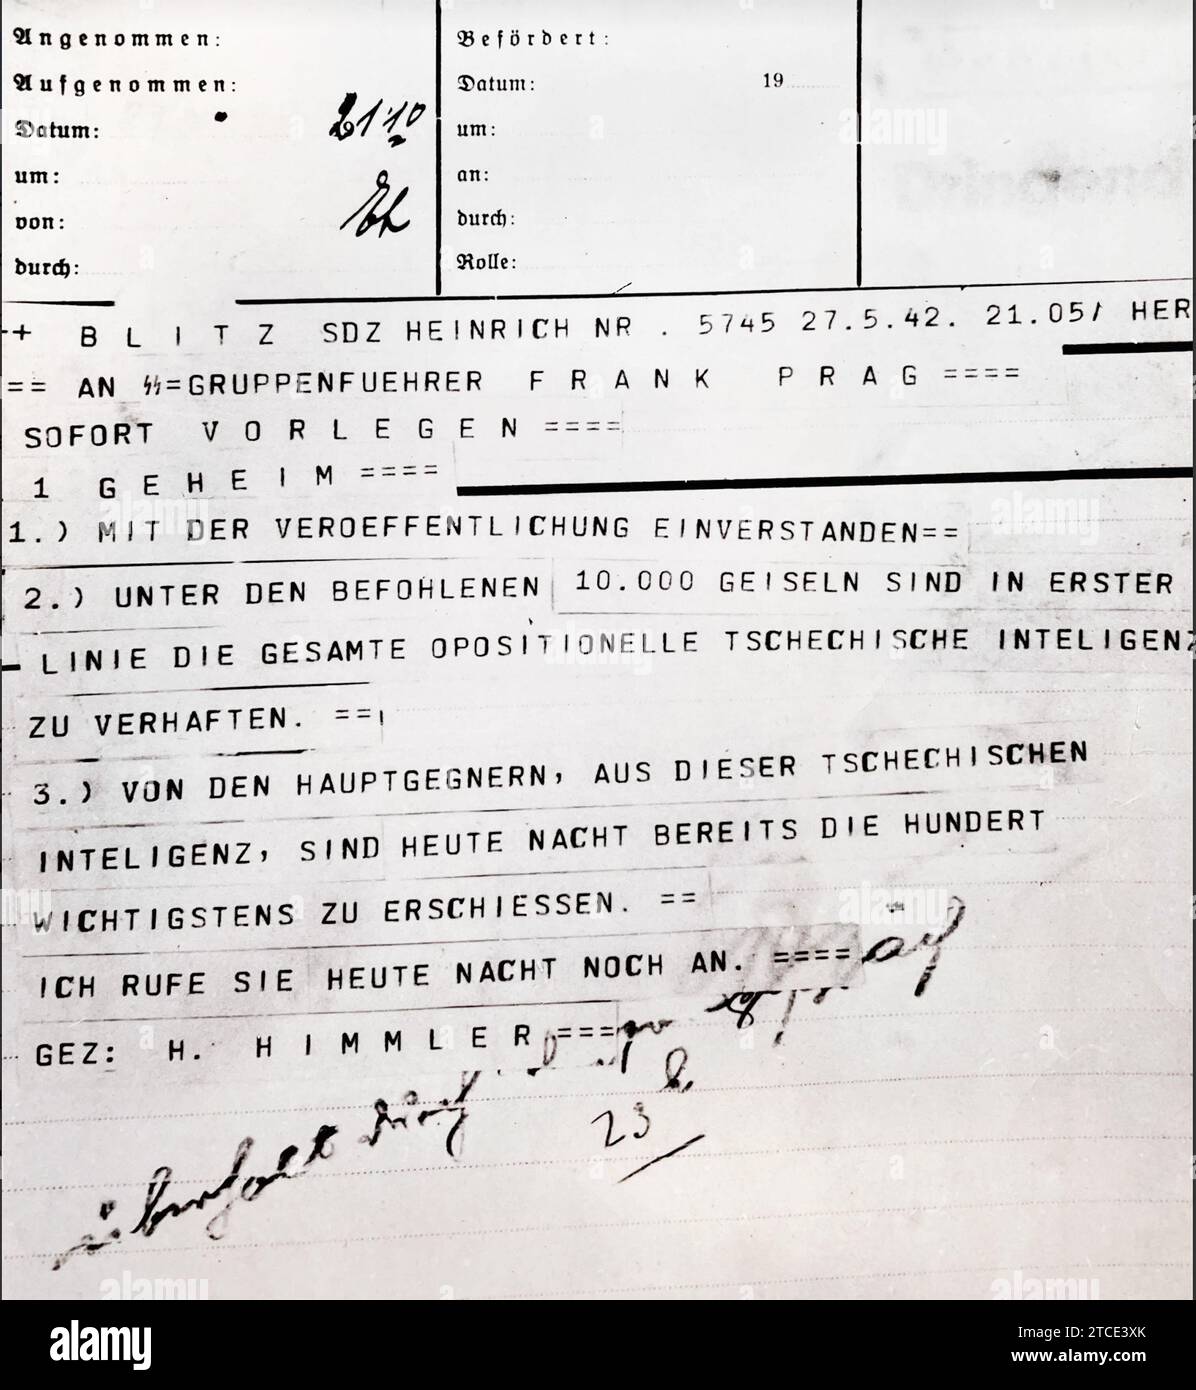 MASSACRO CECO 1942 Telegram di Heinrich Himmler datato 27 maggio 1942 al Segretario di Stato tedesco della Boemia e Moravia occupata, Karl H.Frank."!. con effetto immediato. 2) tra i 10.000 ostaggi ordinati, tutta l'intellighenzia ceca opposta deve essere arrestata per prima. 3. Dal gruppo principale di oppositori, stasera verranno sparati cento dei più importanti. - Ti chiamerò più tardi stasera. Firmato H. Himmler' Foto Stock